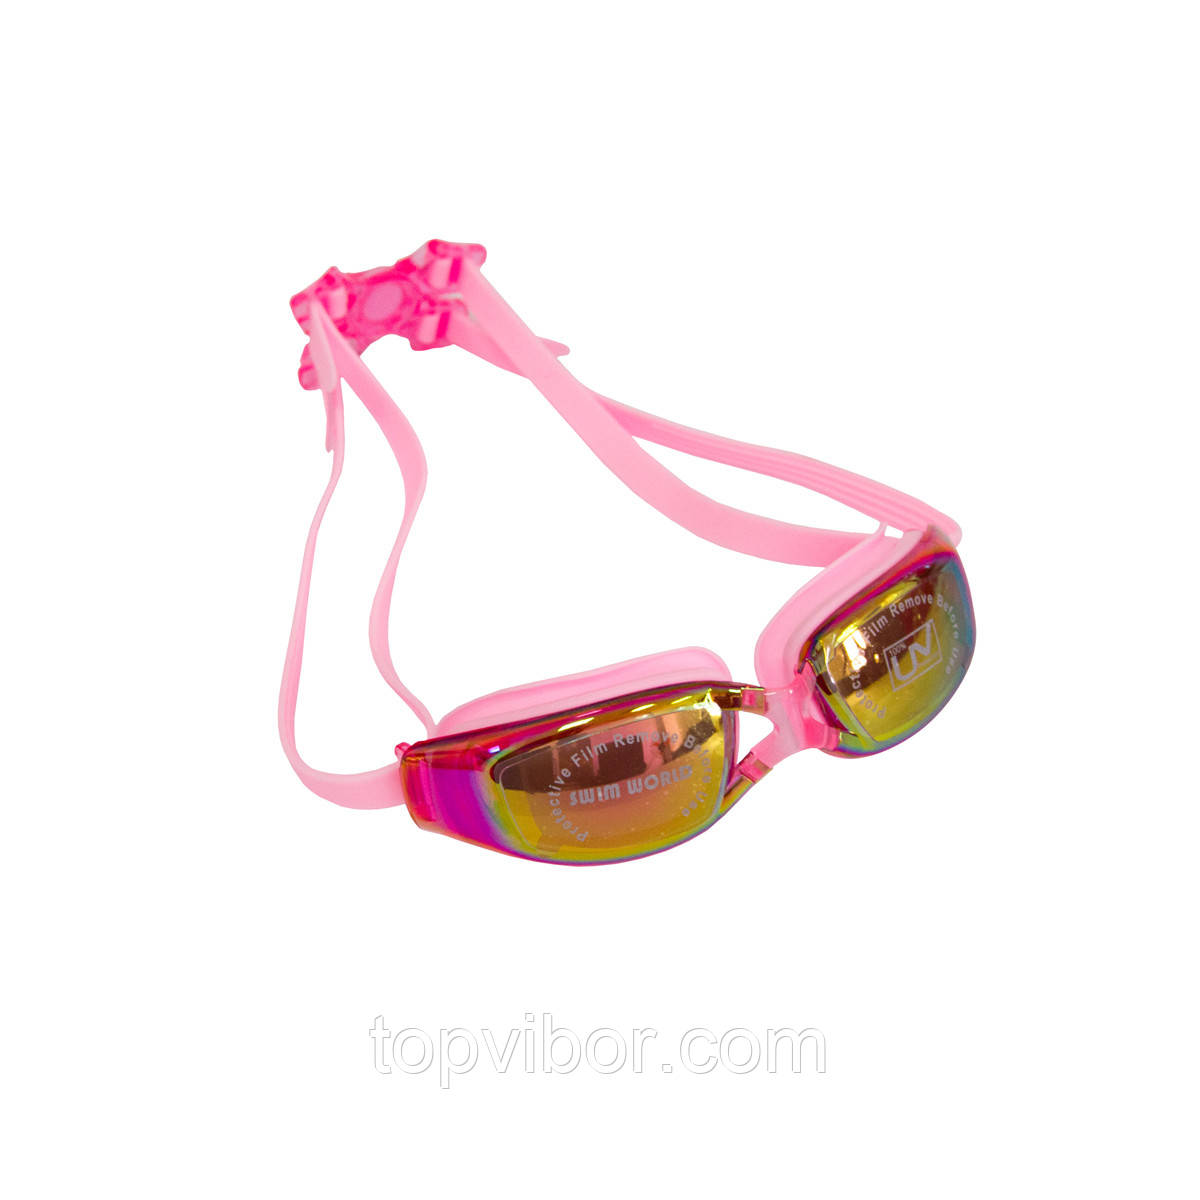 Окуляри для плавання Рожеві дзеркальні окуляри для плавання в басейні, відкритій воді | жіночі очки для плавания, фото 1